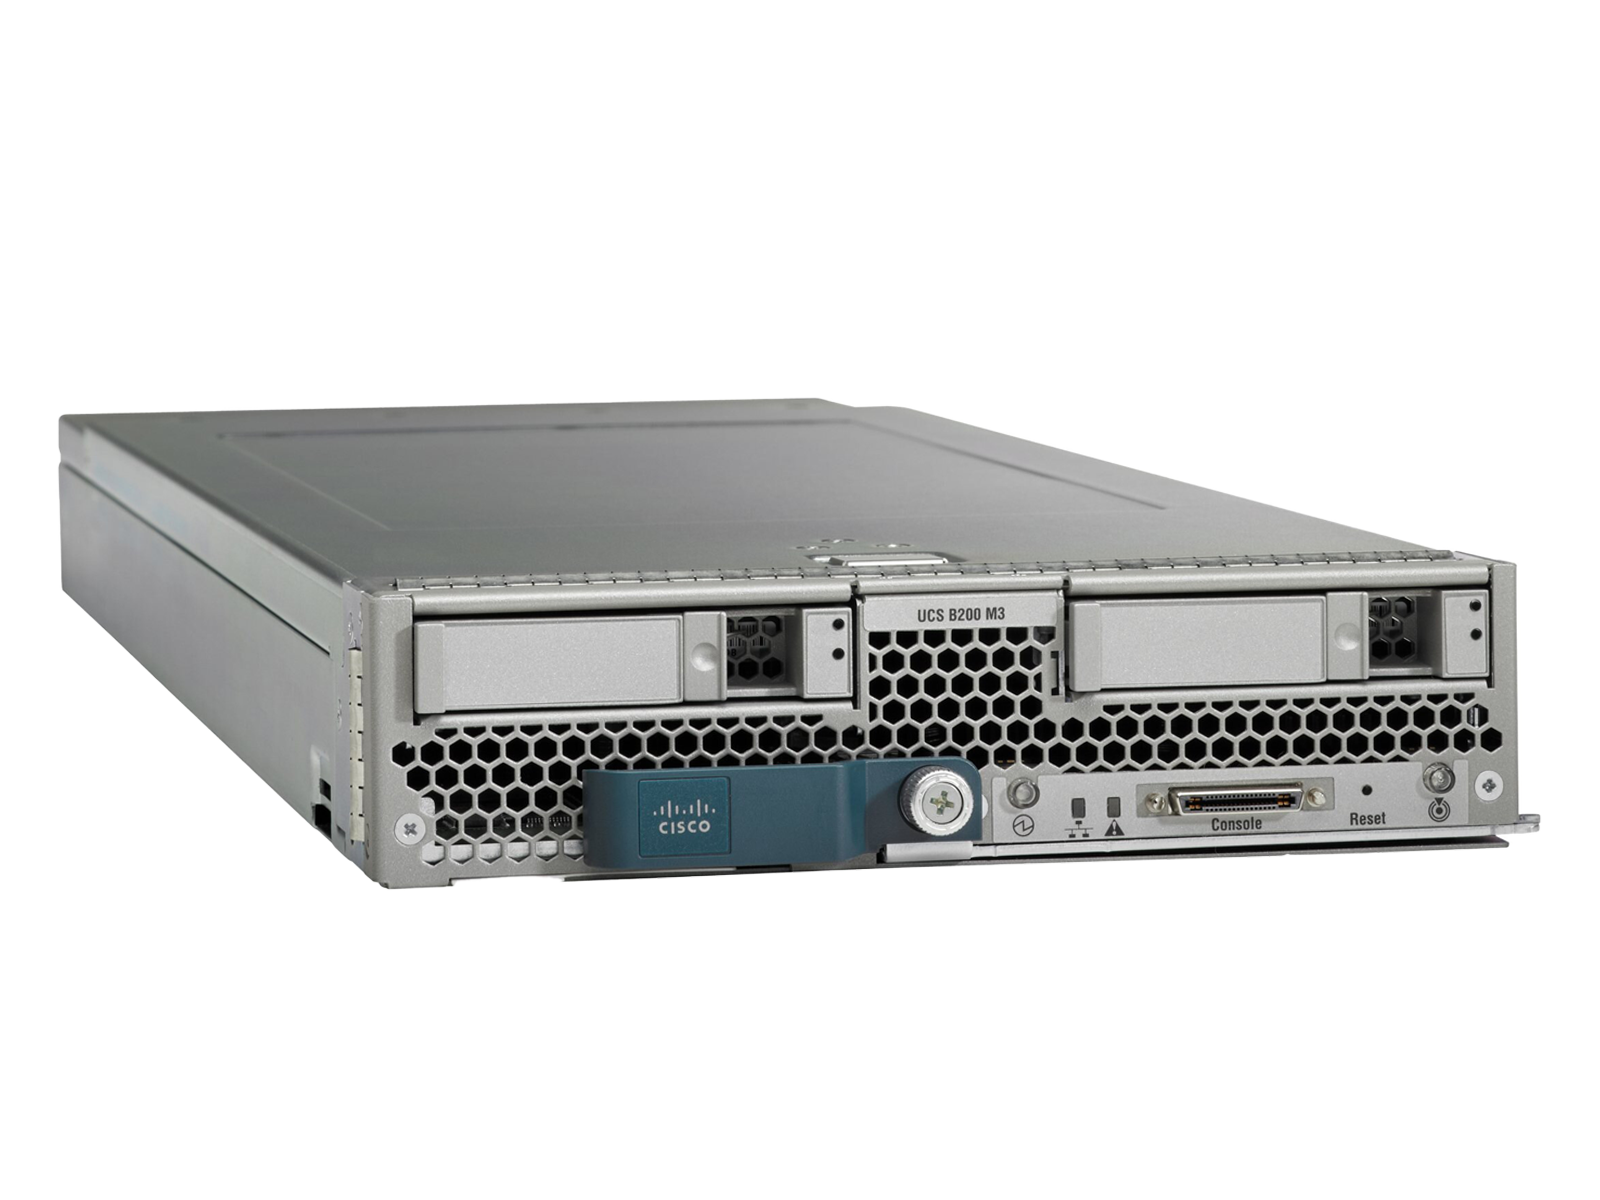 Cisco B200 M3 Two E5-2670V2 10C 8x 16GB=128GB Ram Blade Server VIC1240 1866MHz.